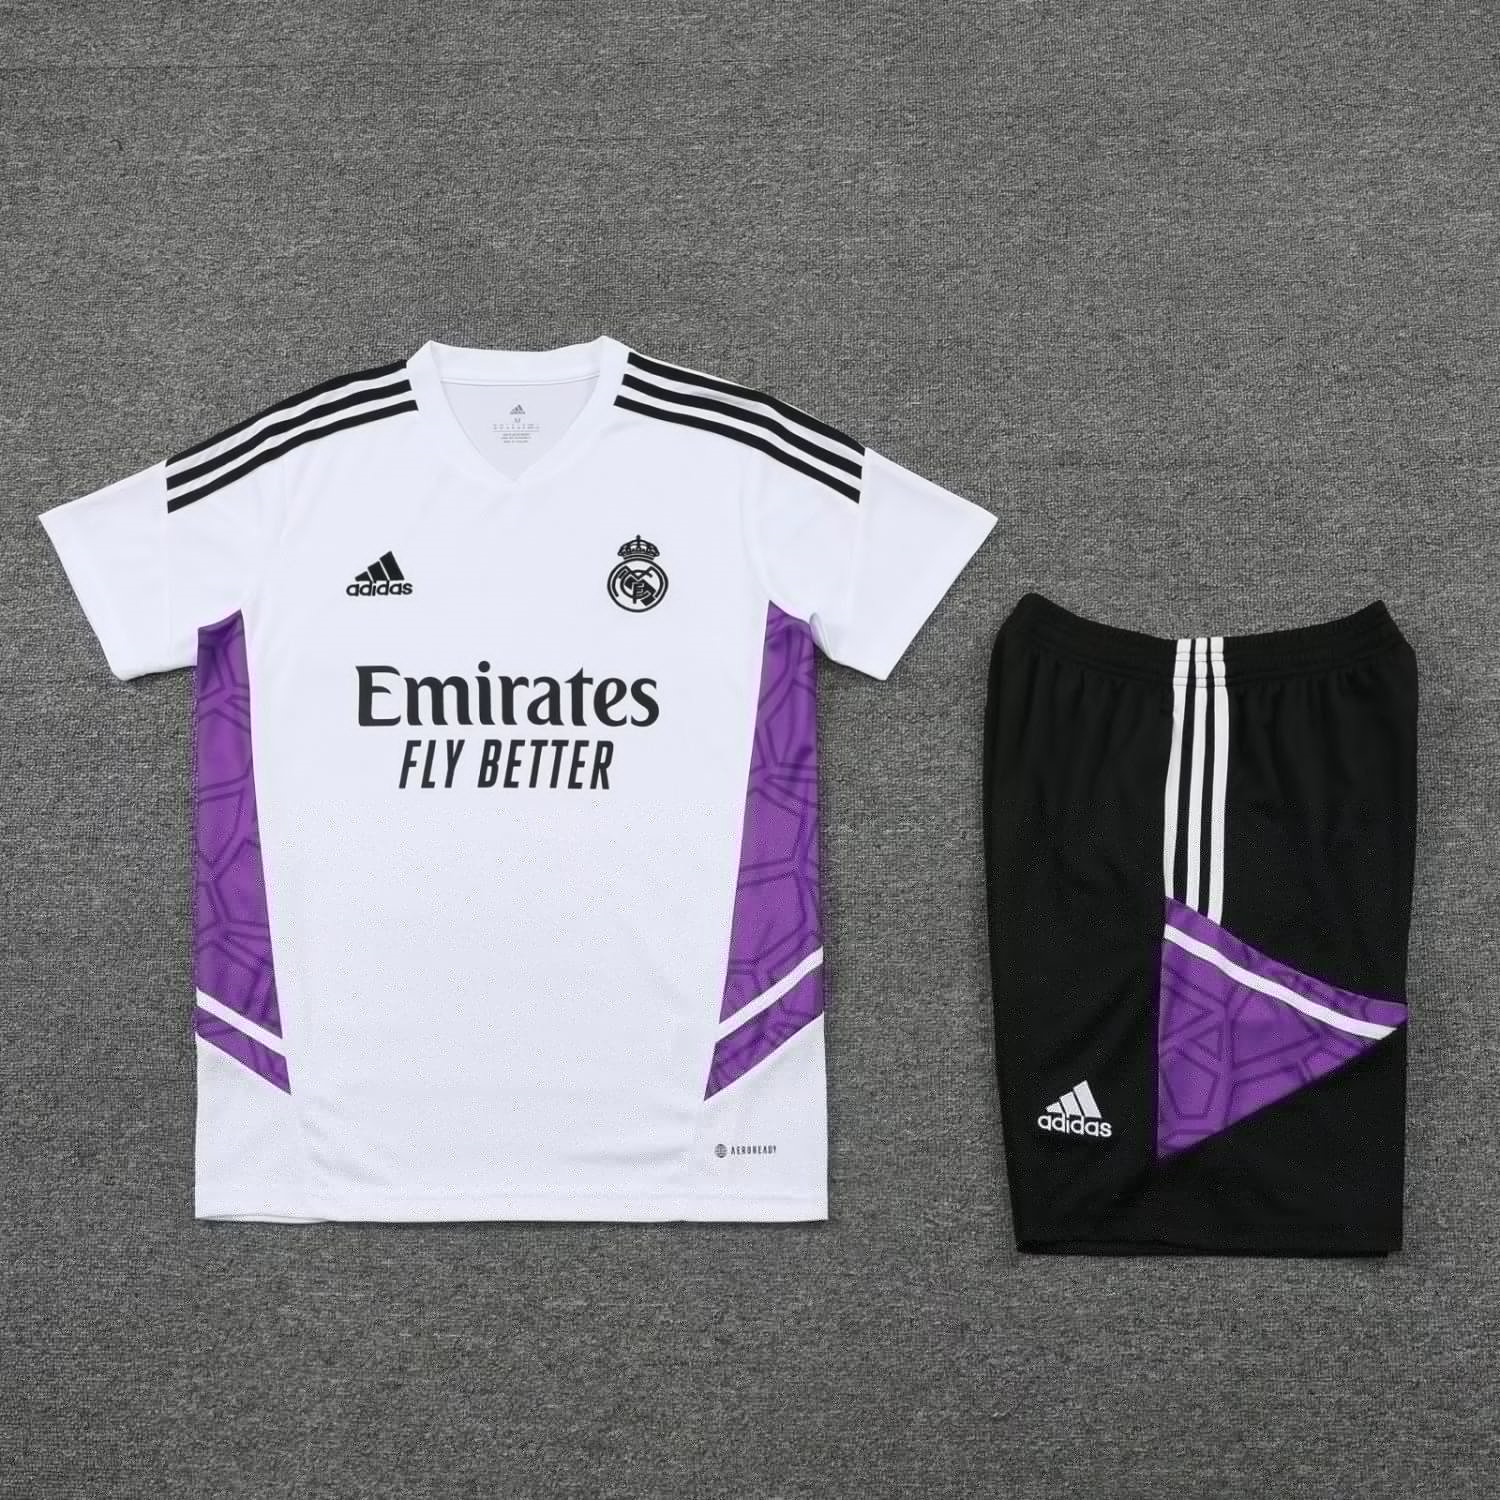 22-23 Real Madrid White Short Soccer Football Training Kit ( Top + Short ) Man